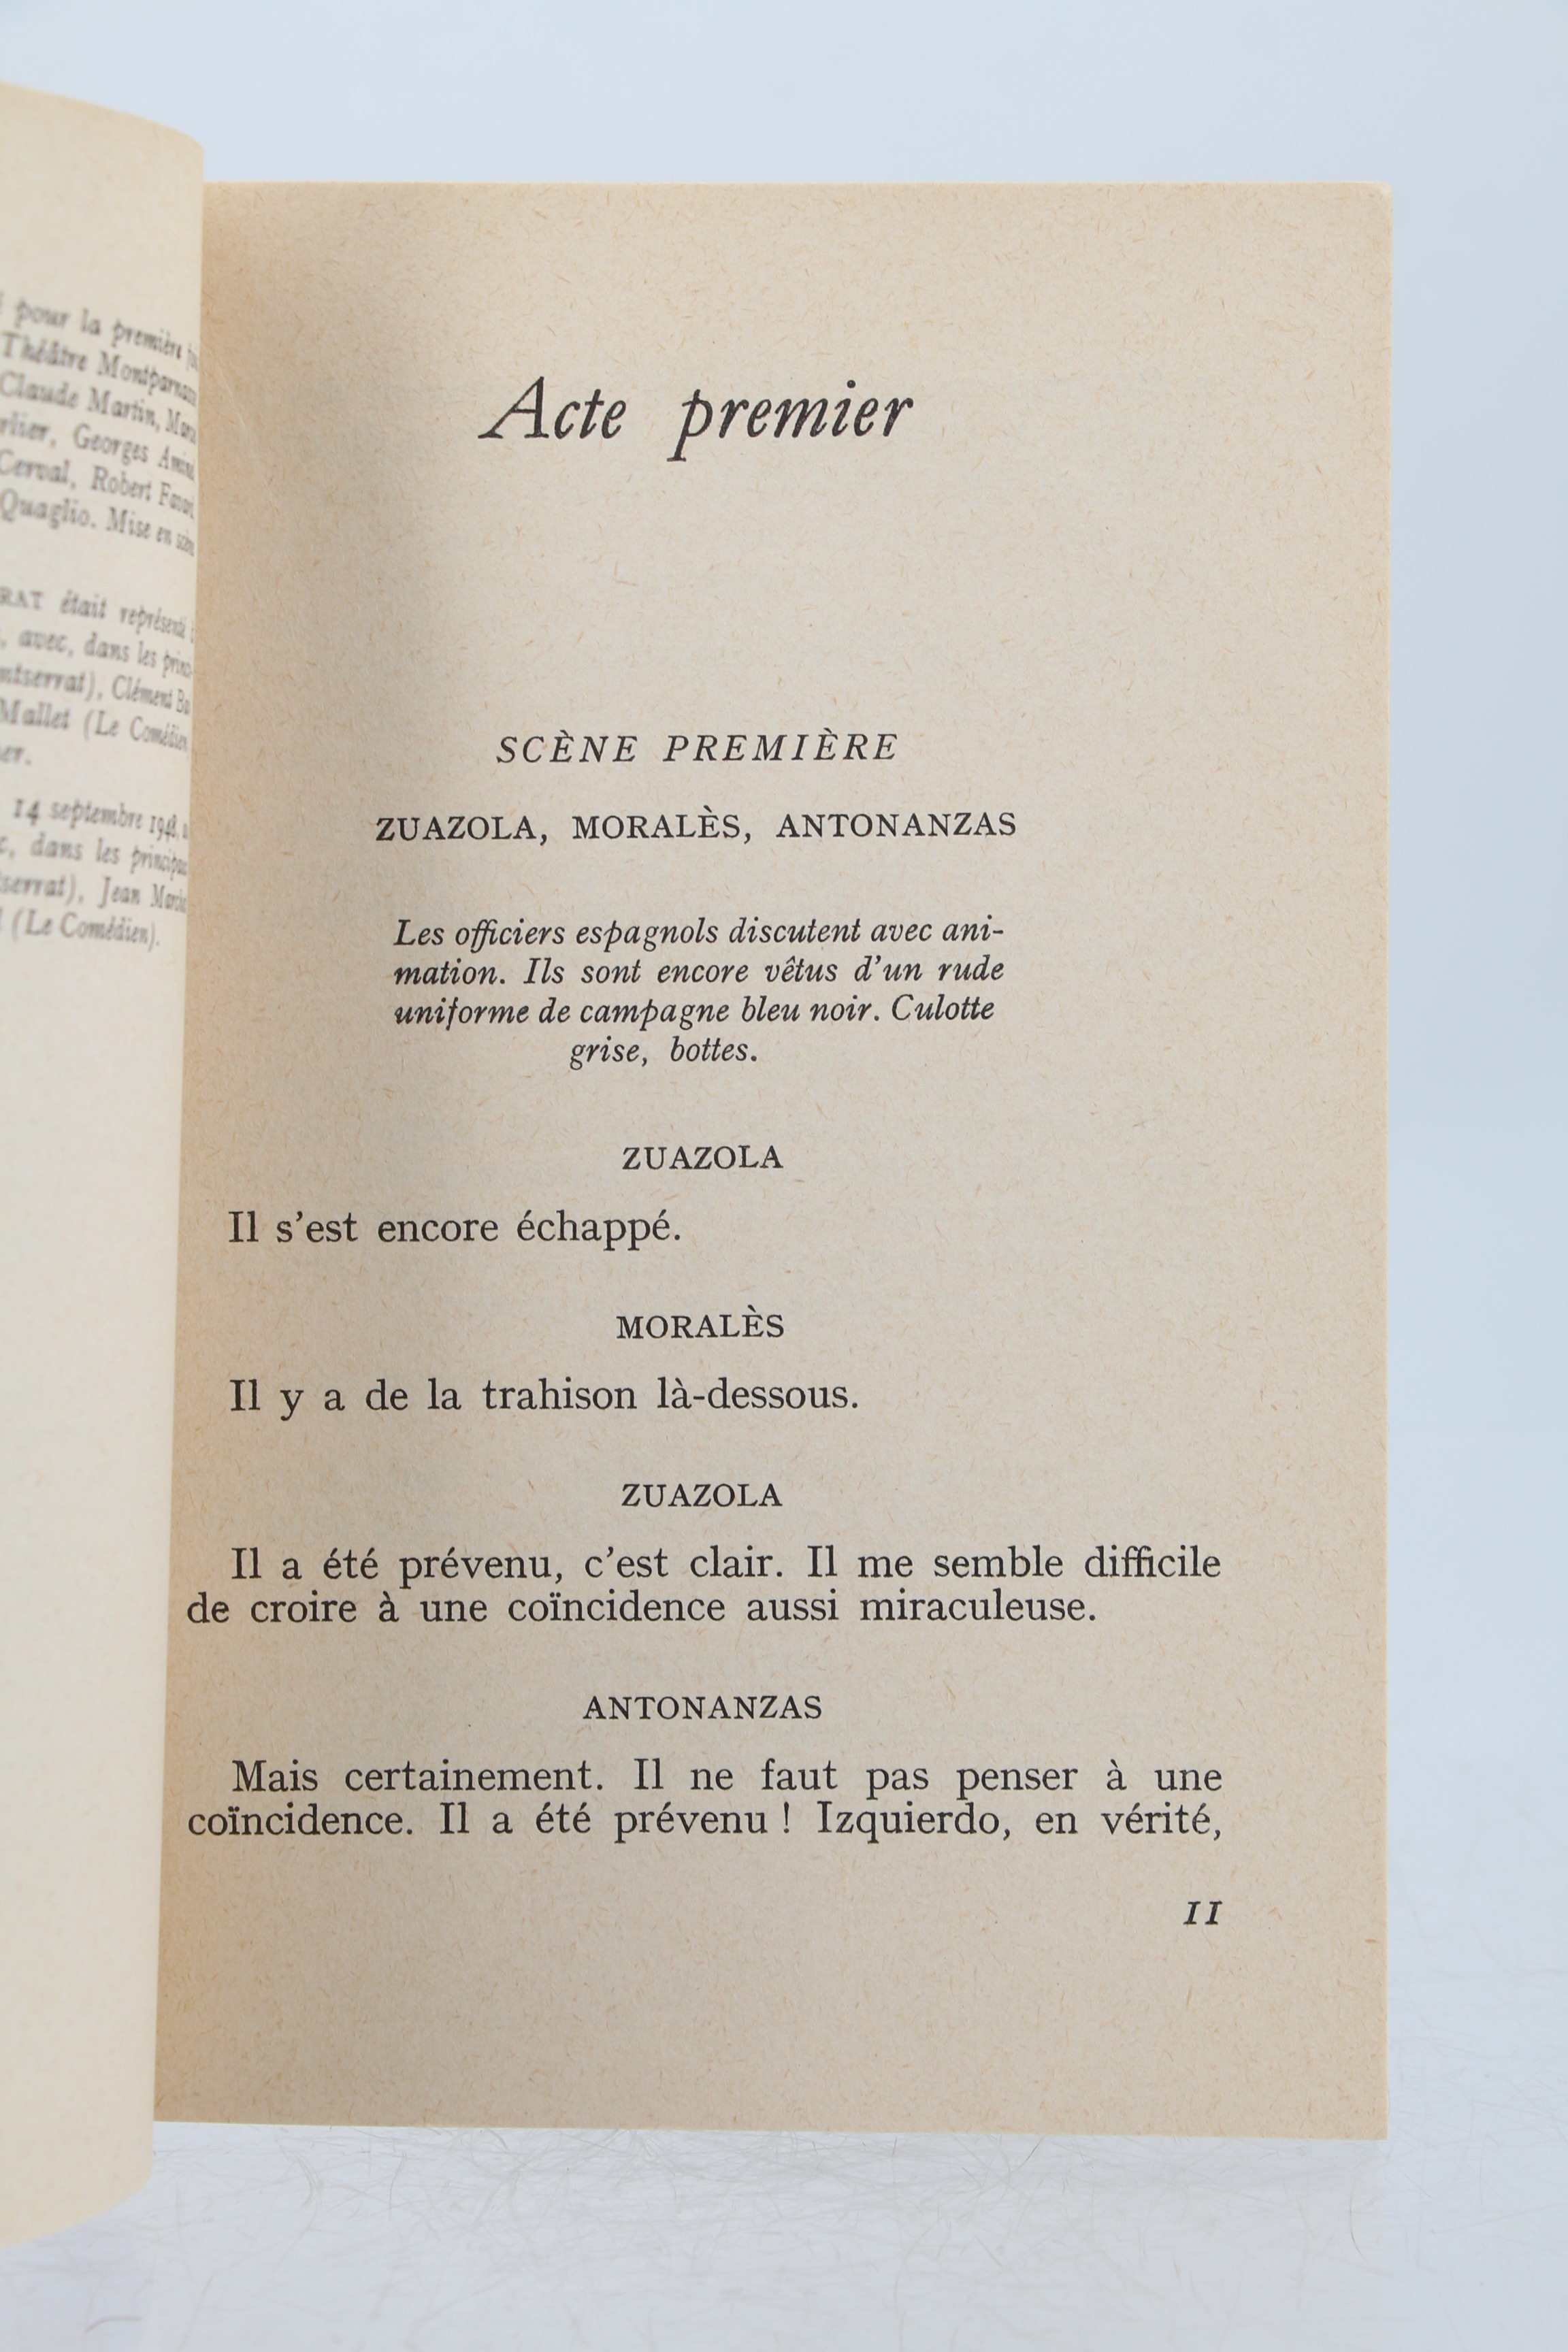 EMMANUEL ROBLES MONTSERRAT 1954 Illustré ENVOI Signé THEATRE